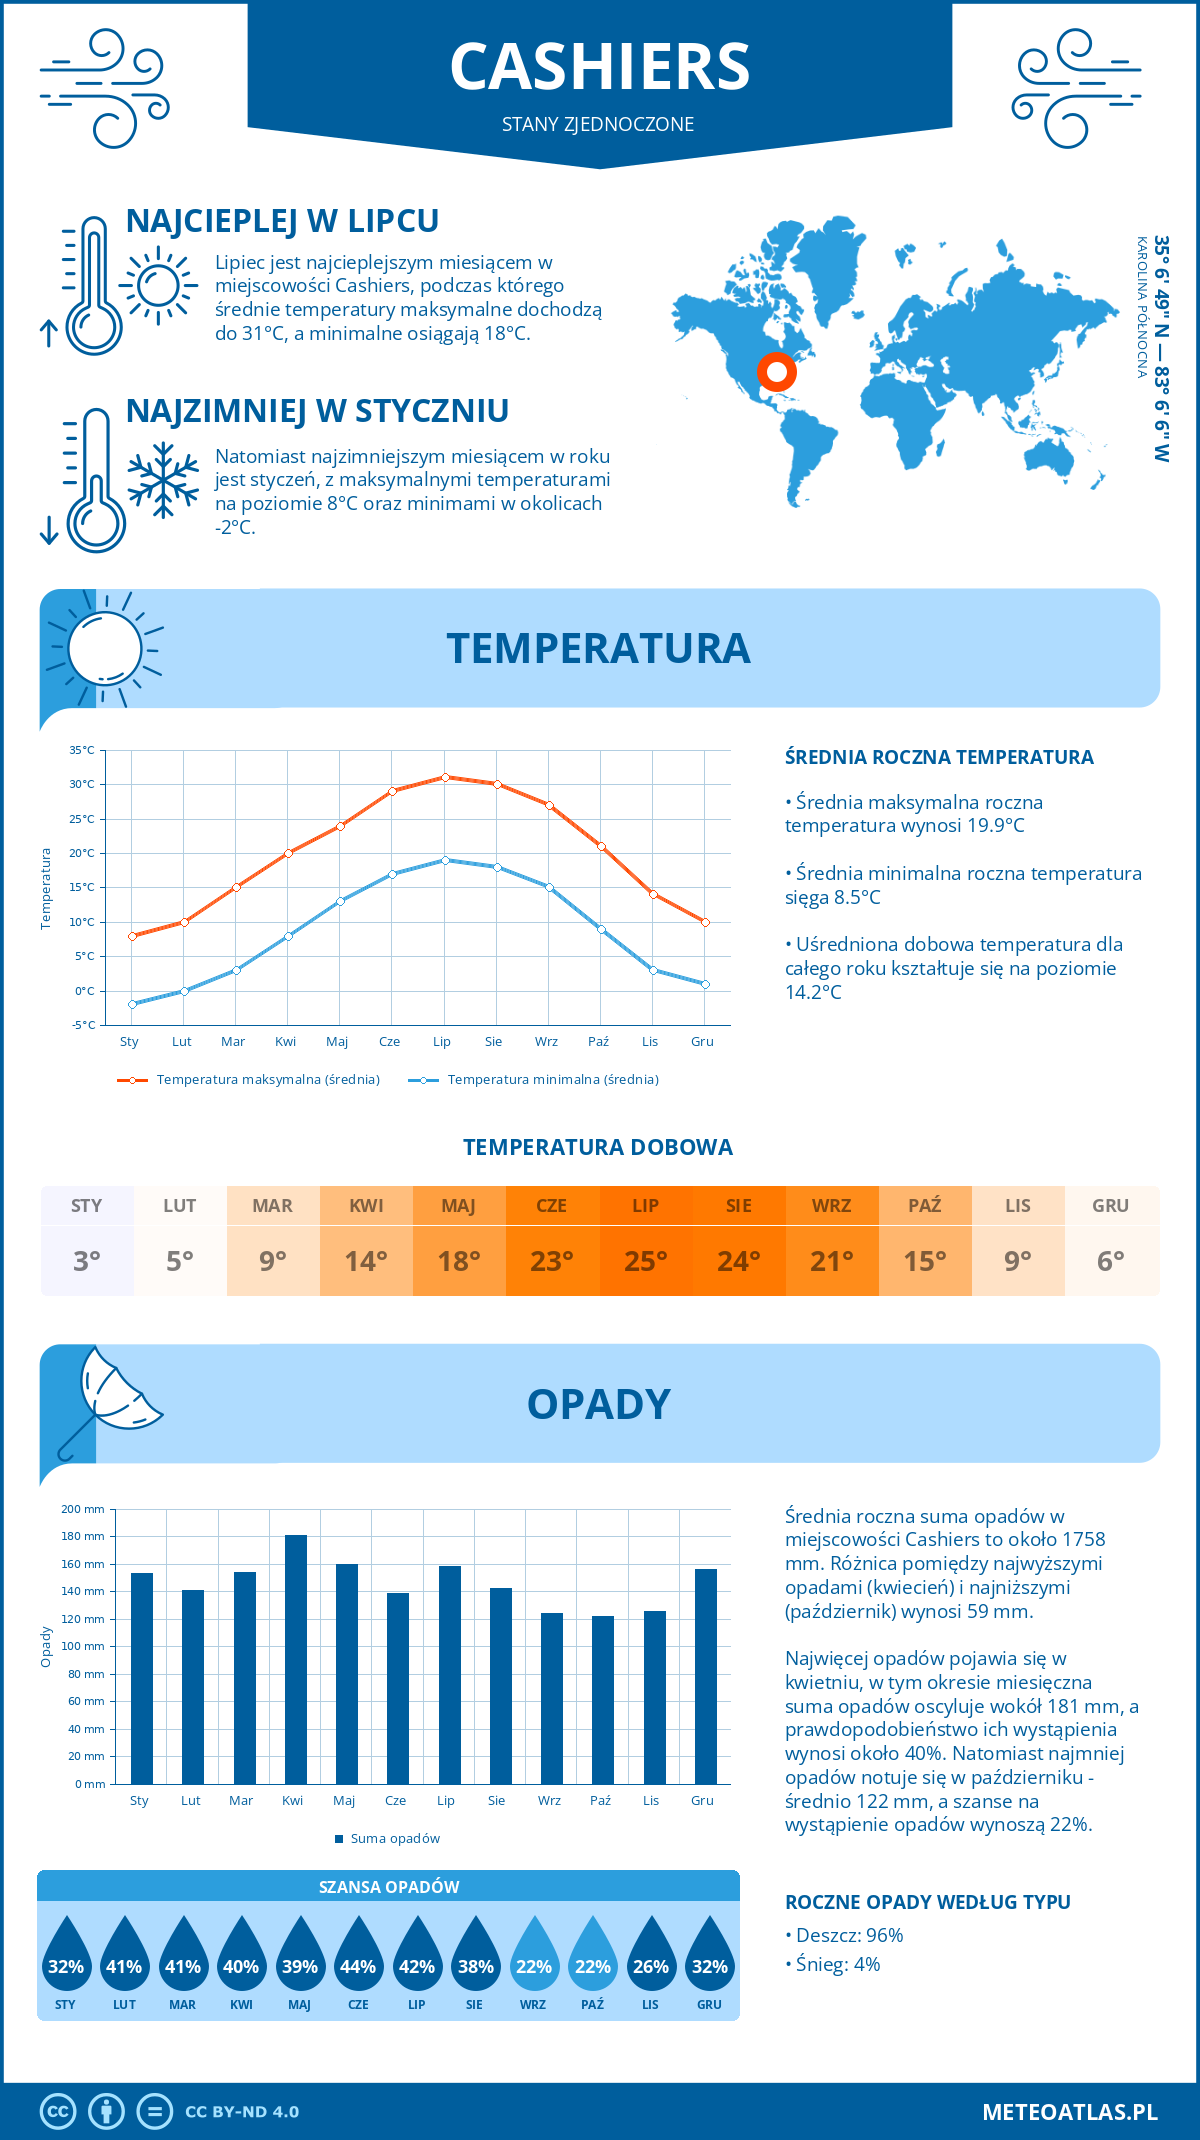 Pogoda Cashiers (Stany Zjednoczone). Temperatura oraz opady.